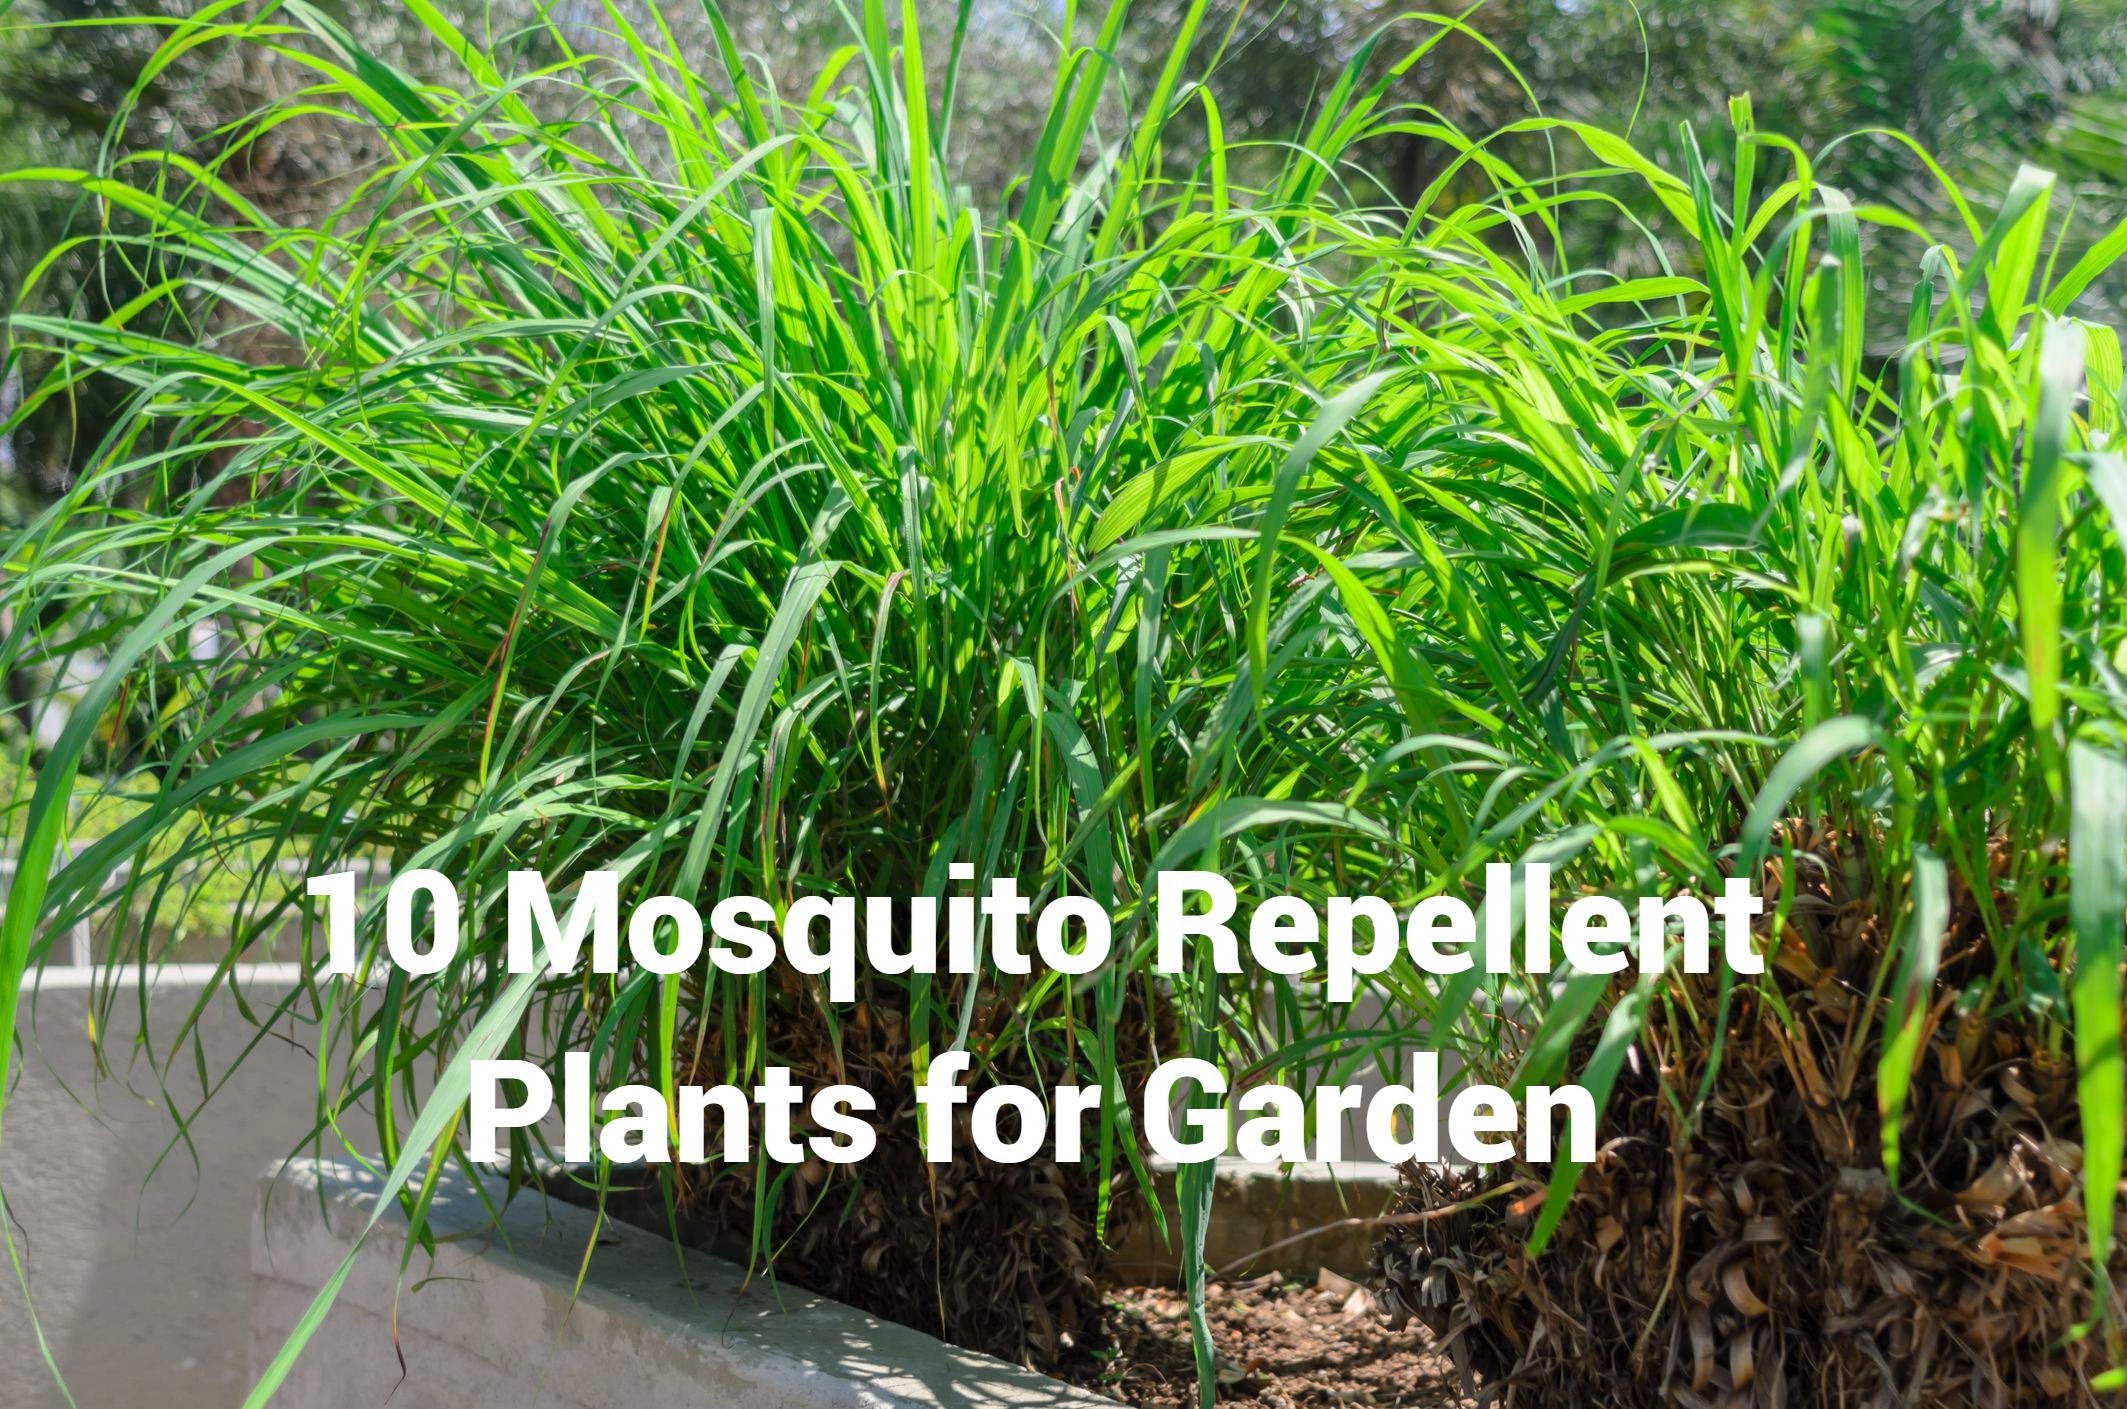 Mosquito Repellent Plants for Garden